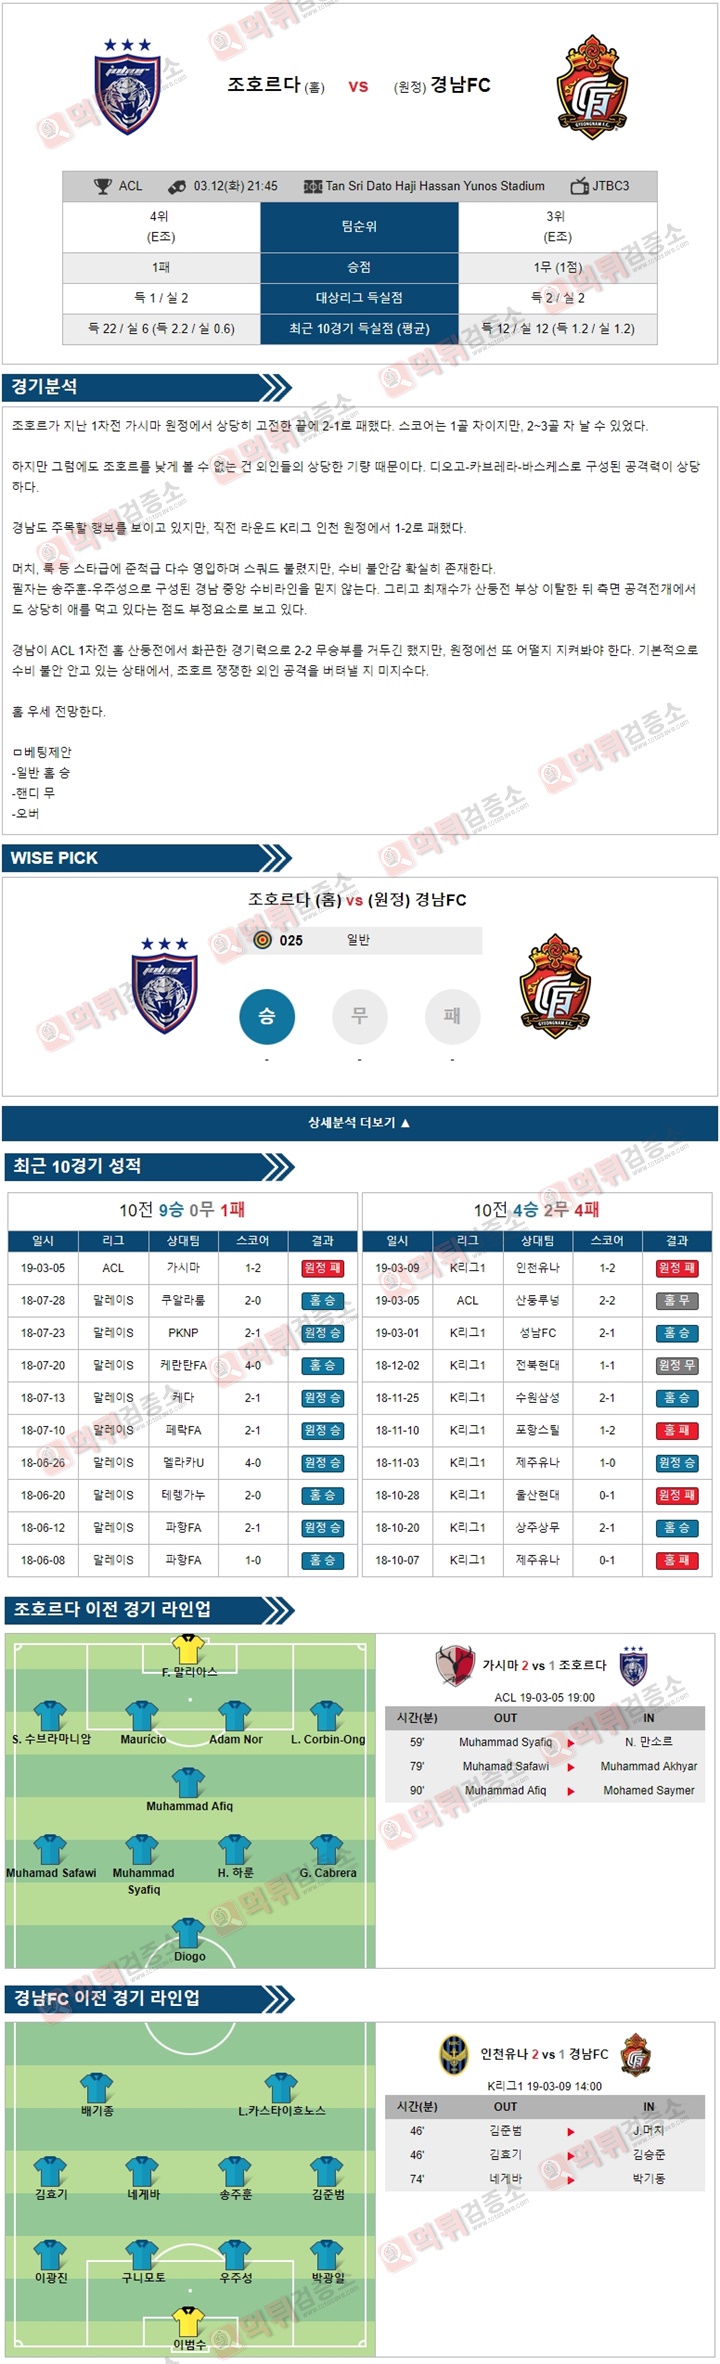 무료분석픽 ACL 3월12일 조호르다 vs 경남FC 경기 분석